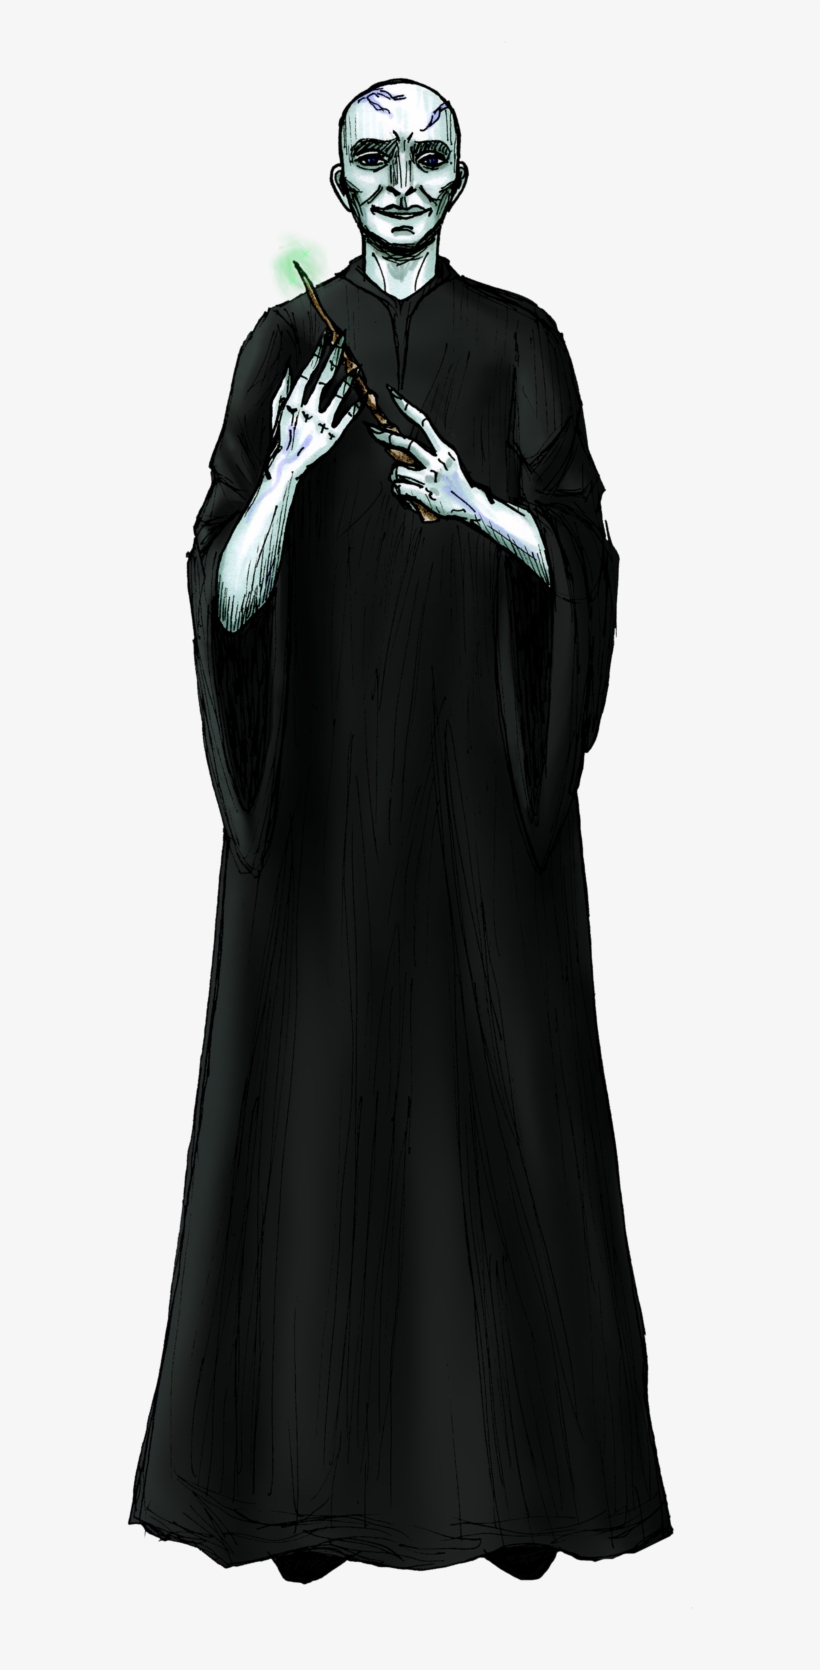 Voldemort Png - Little Black Dress, transparent png #8889770